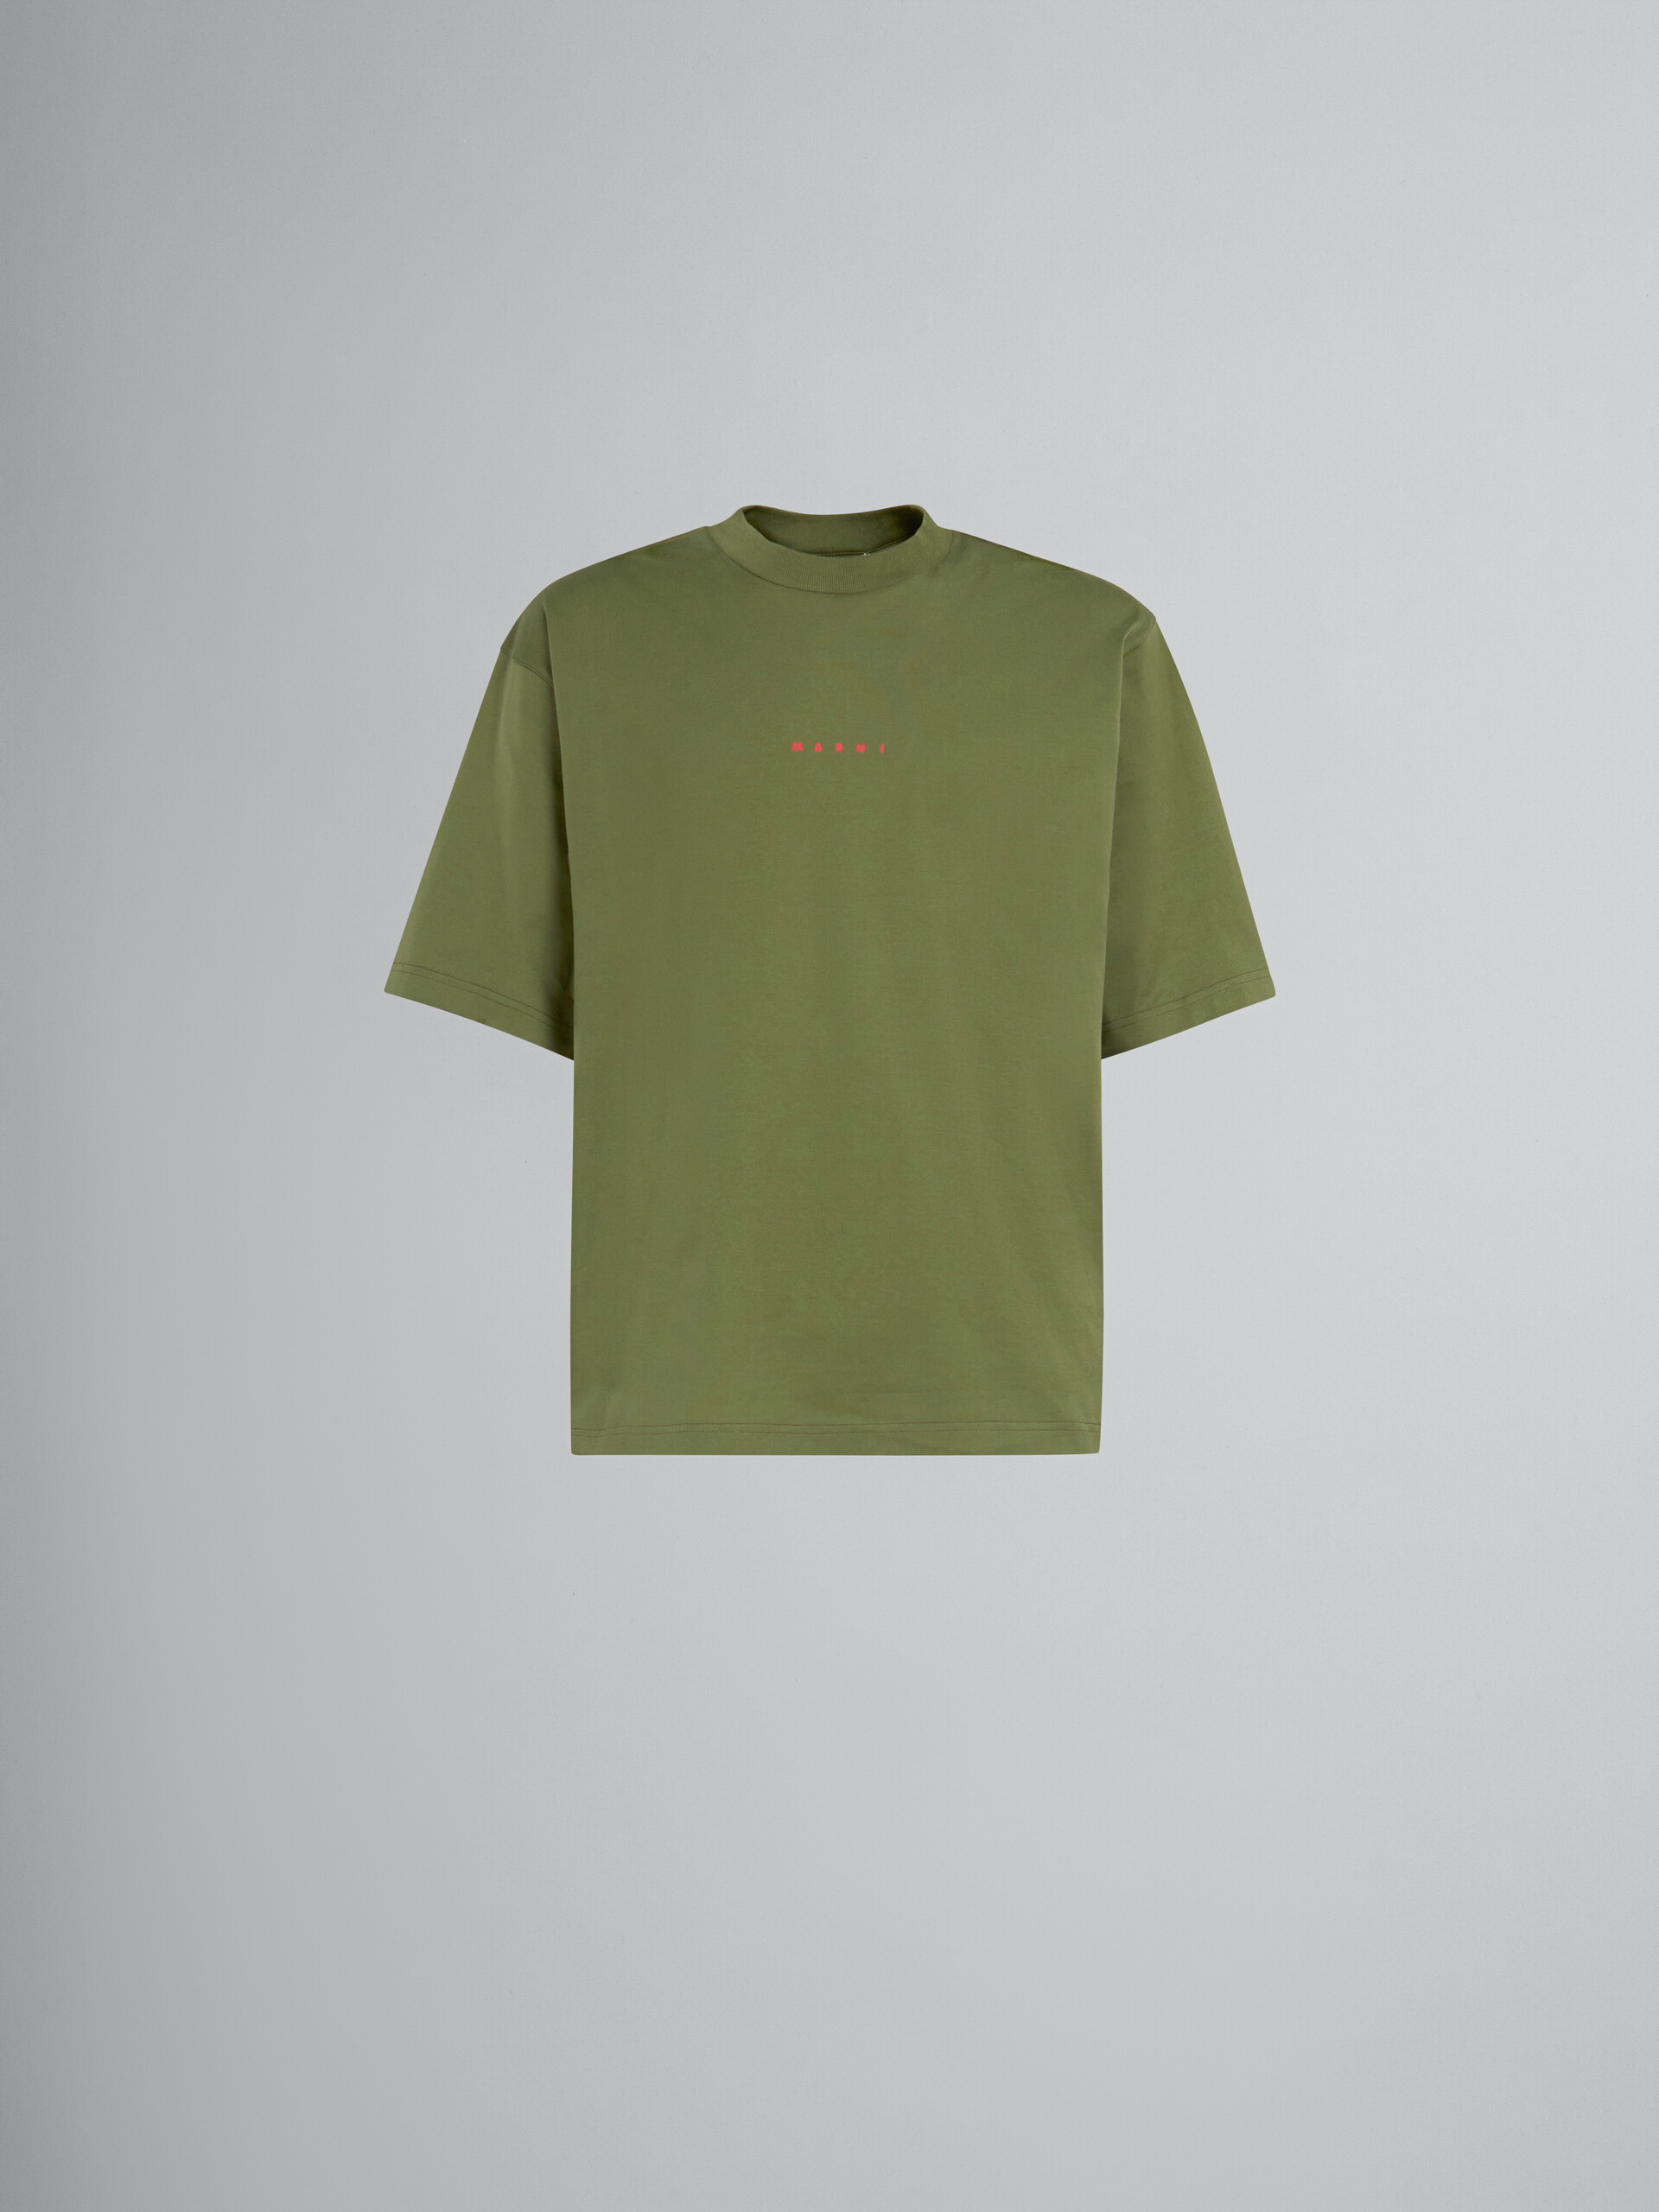 Grünes T-Shirt aus Bio-Baumwolle mit Logo - T-shirts - Image 1